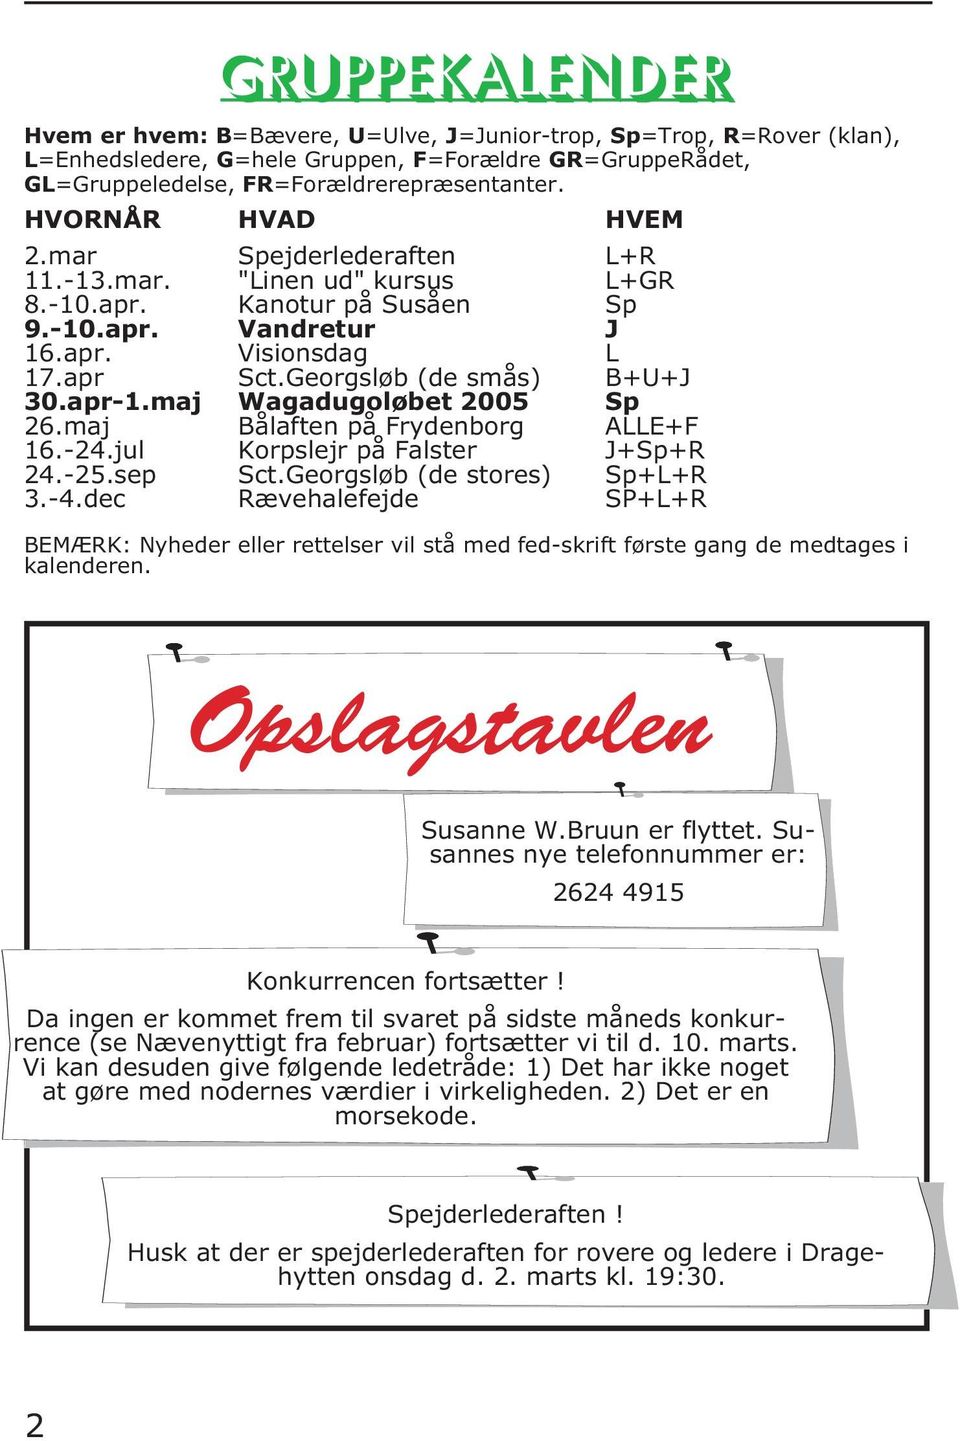 apr-1.maj Wagadugoløbet 2005 Sp 26.maj Bålaften på Frydenborg ALLE+F 16.-24.jul Korpslejr på Falster J+Sp+R 24.-25.sep Sct.Georgsløb (de stores) Sp+L+R 3.-4.